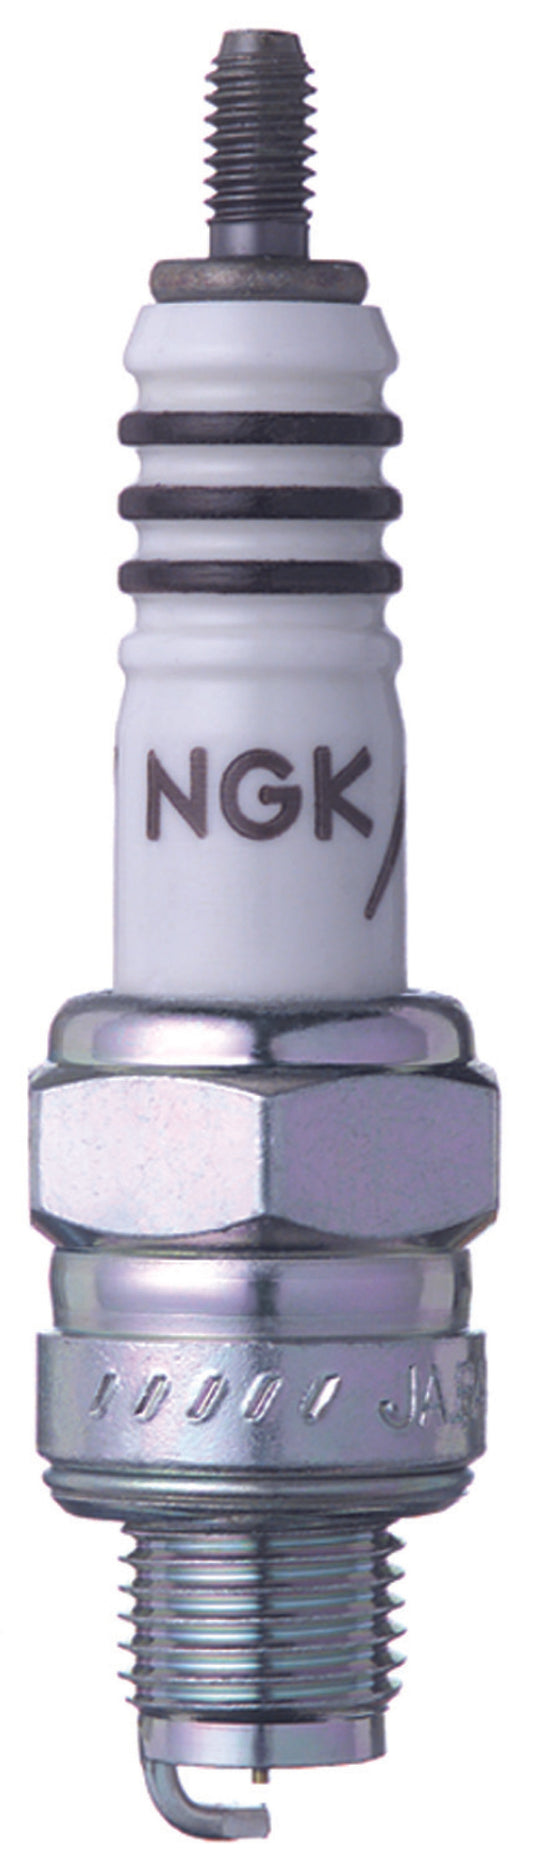 NGK Iridium IX Spark Plug Box of 4 (CR8HIX)